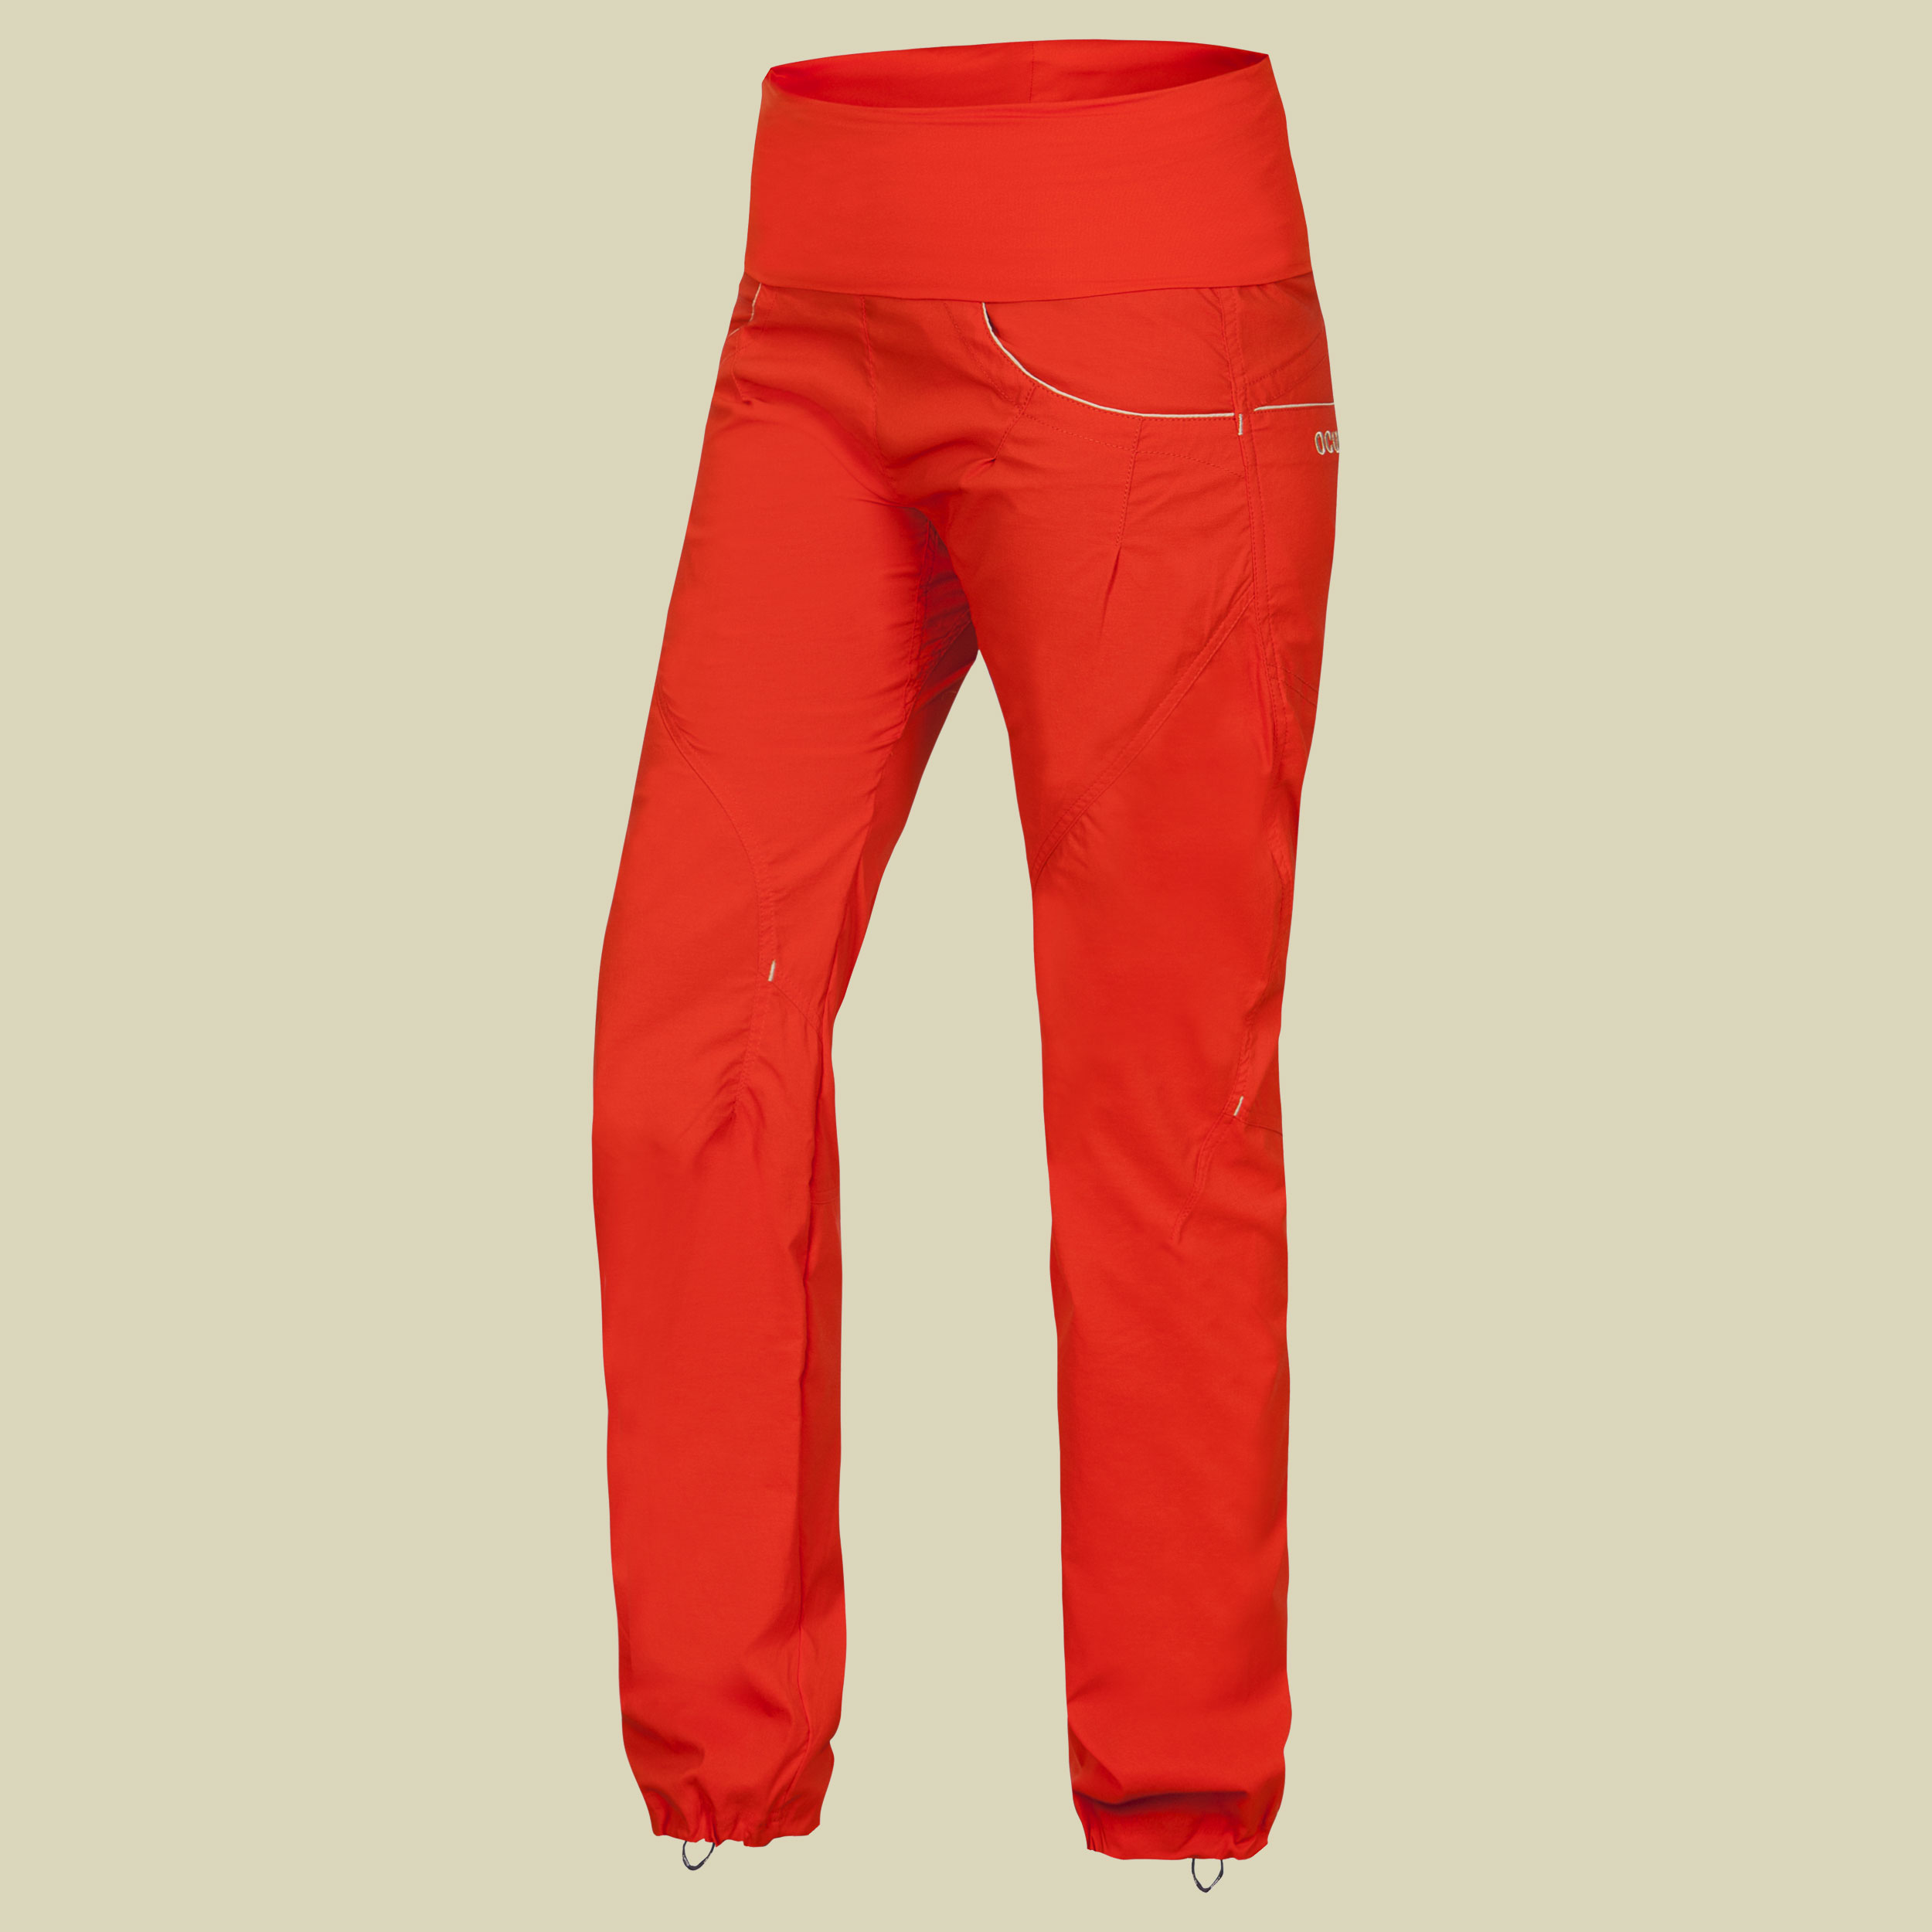 Noya Pants Women Größe S Farbe orange poinciana